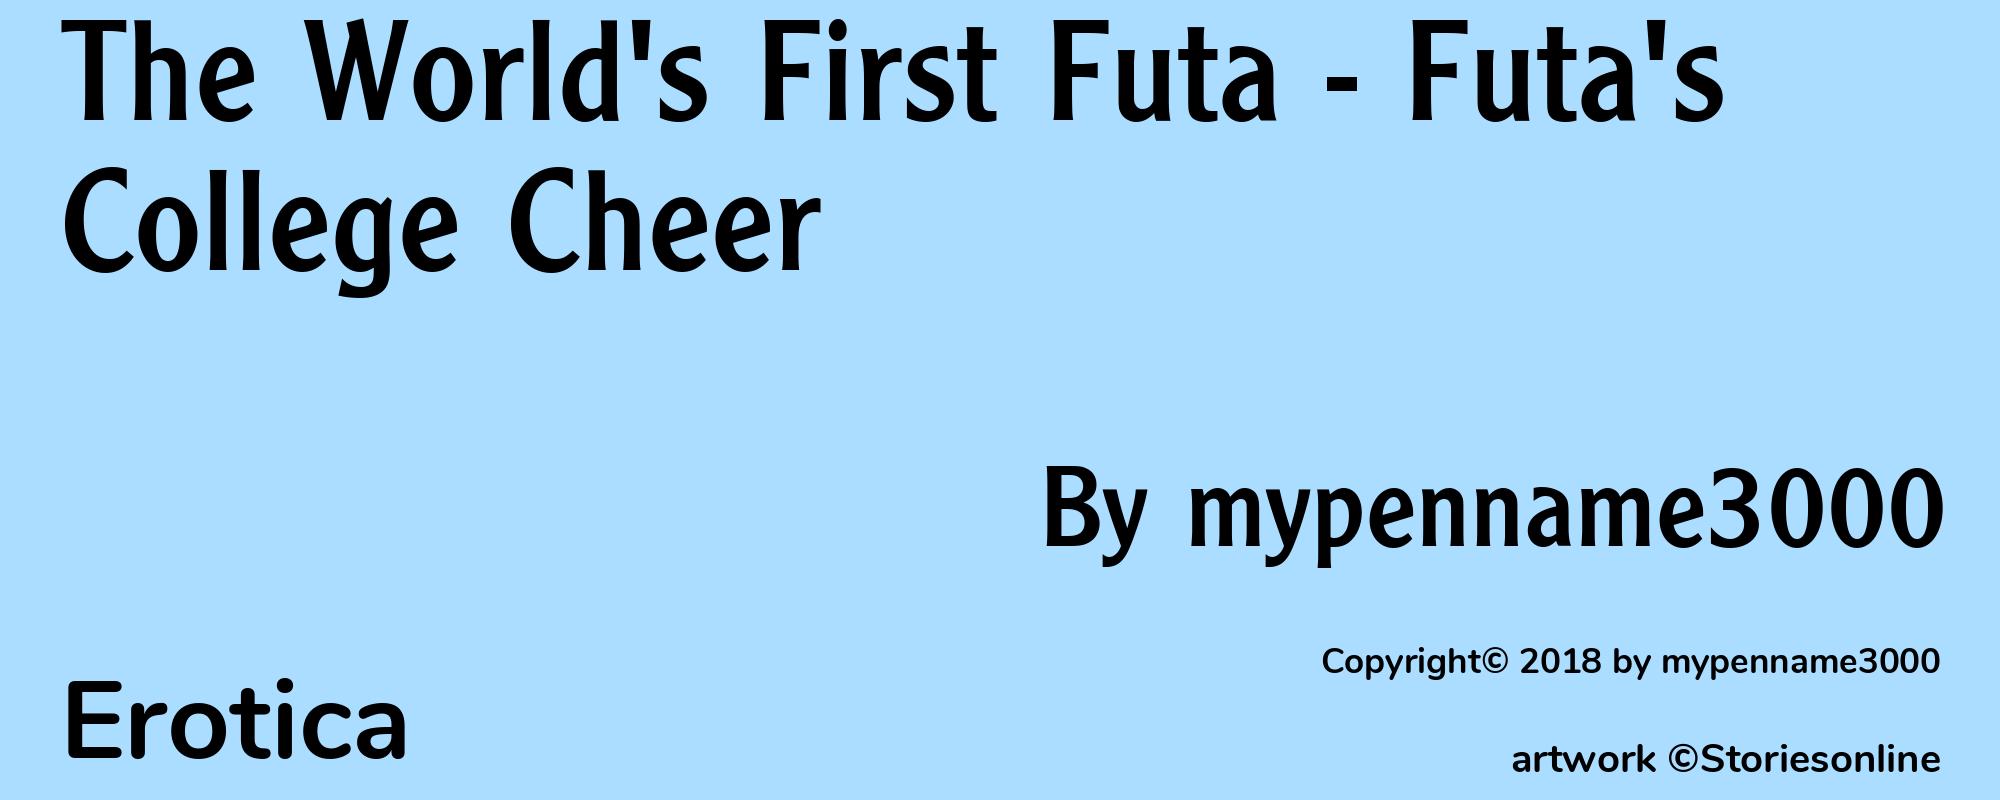 The World's First Futa - Futa's College Cheer - Cover